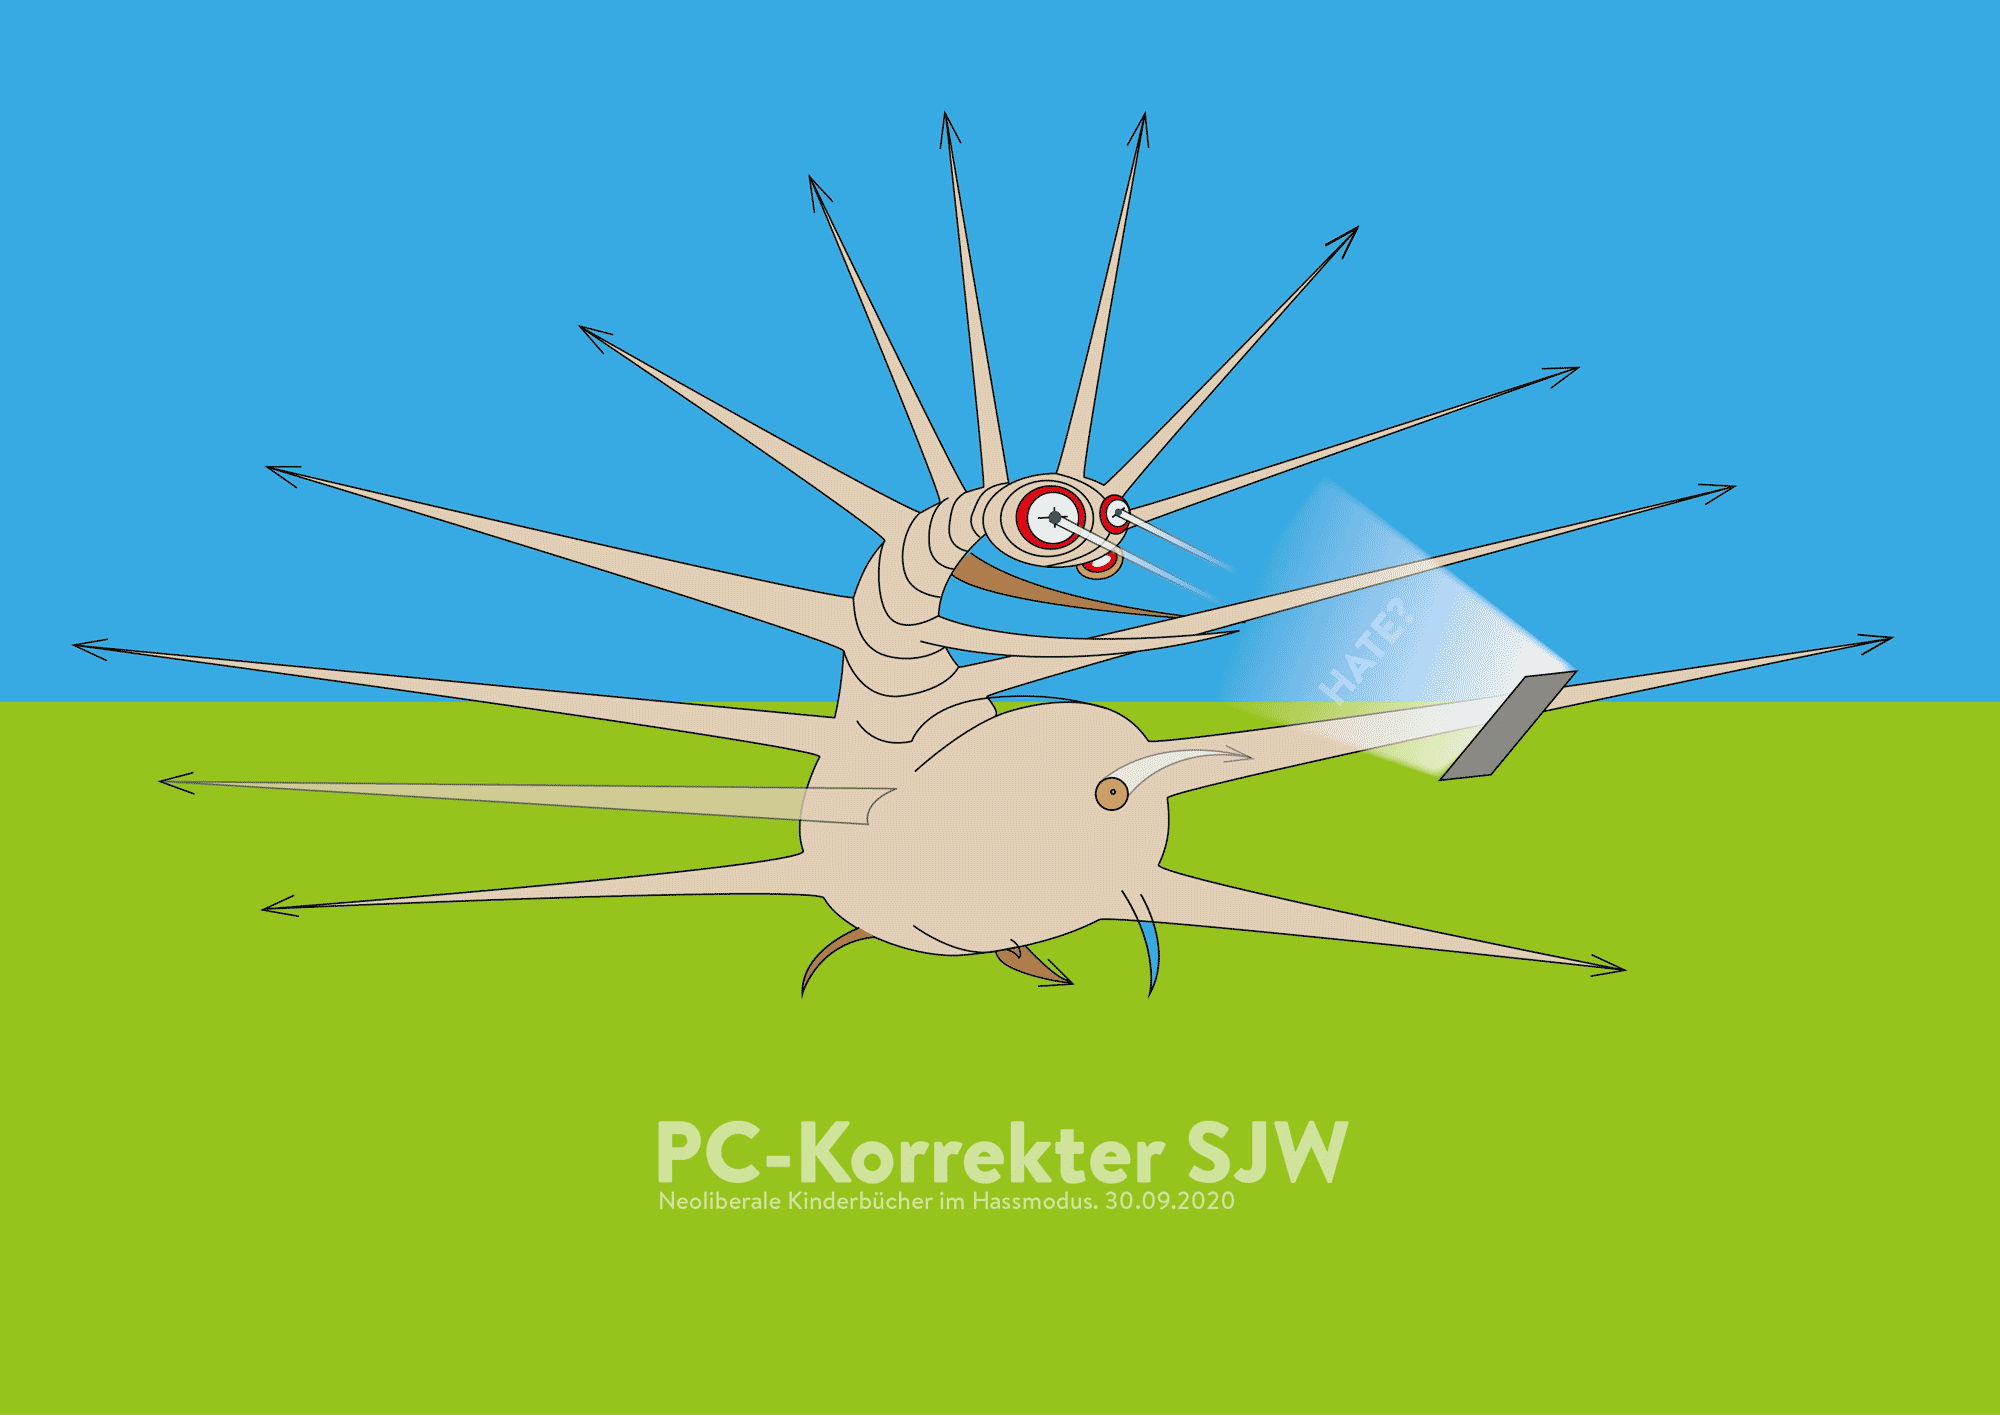 PC-Korrekter SJW 2020